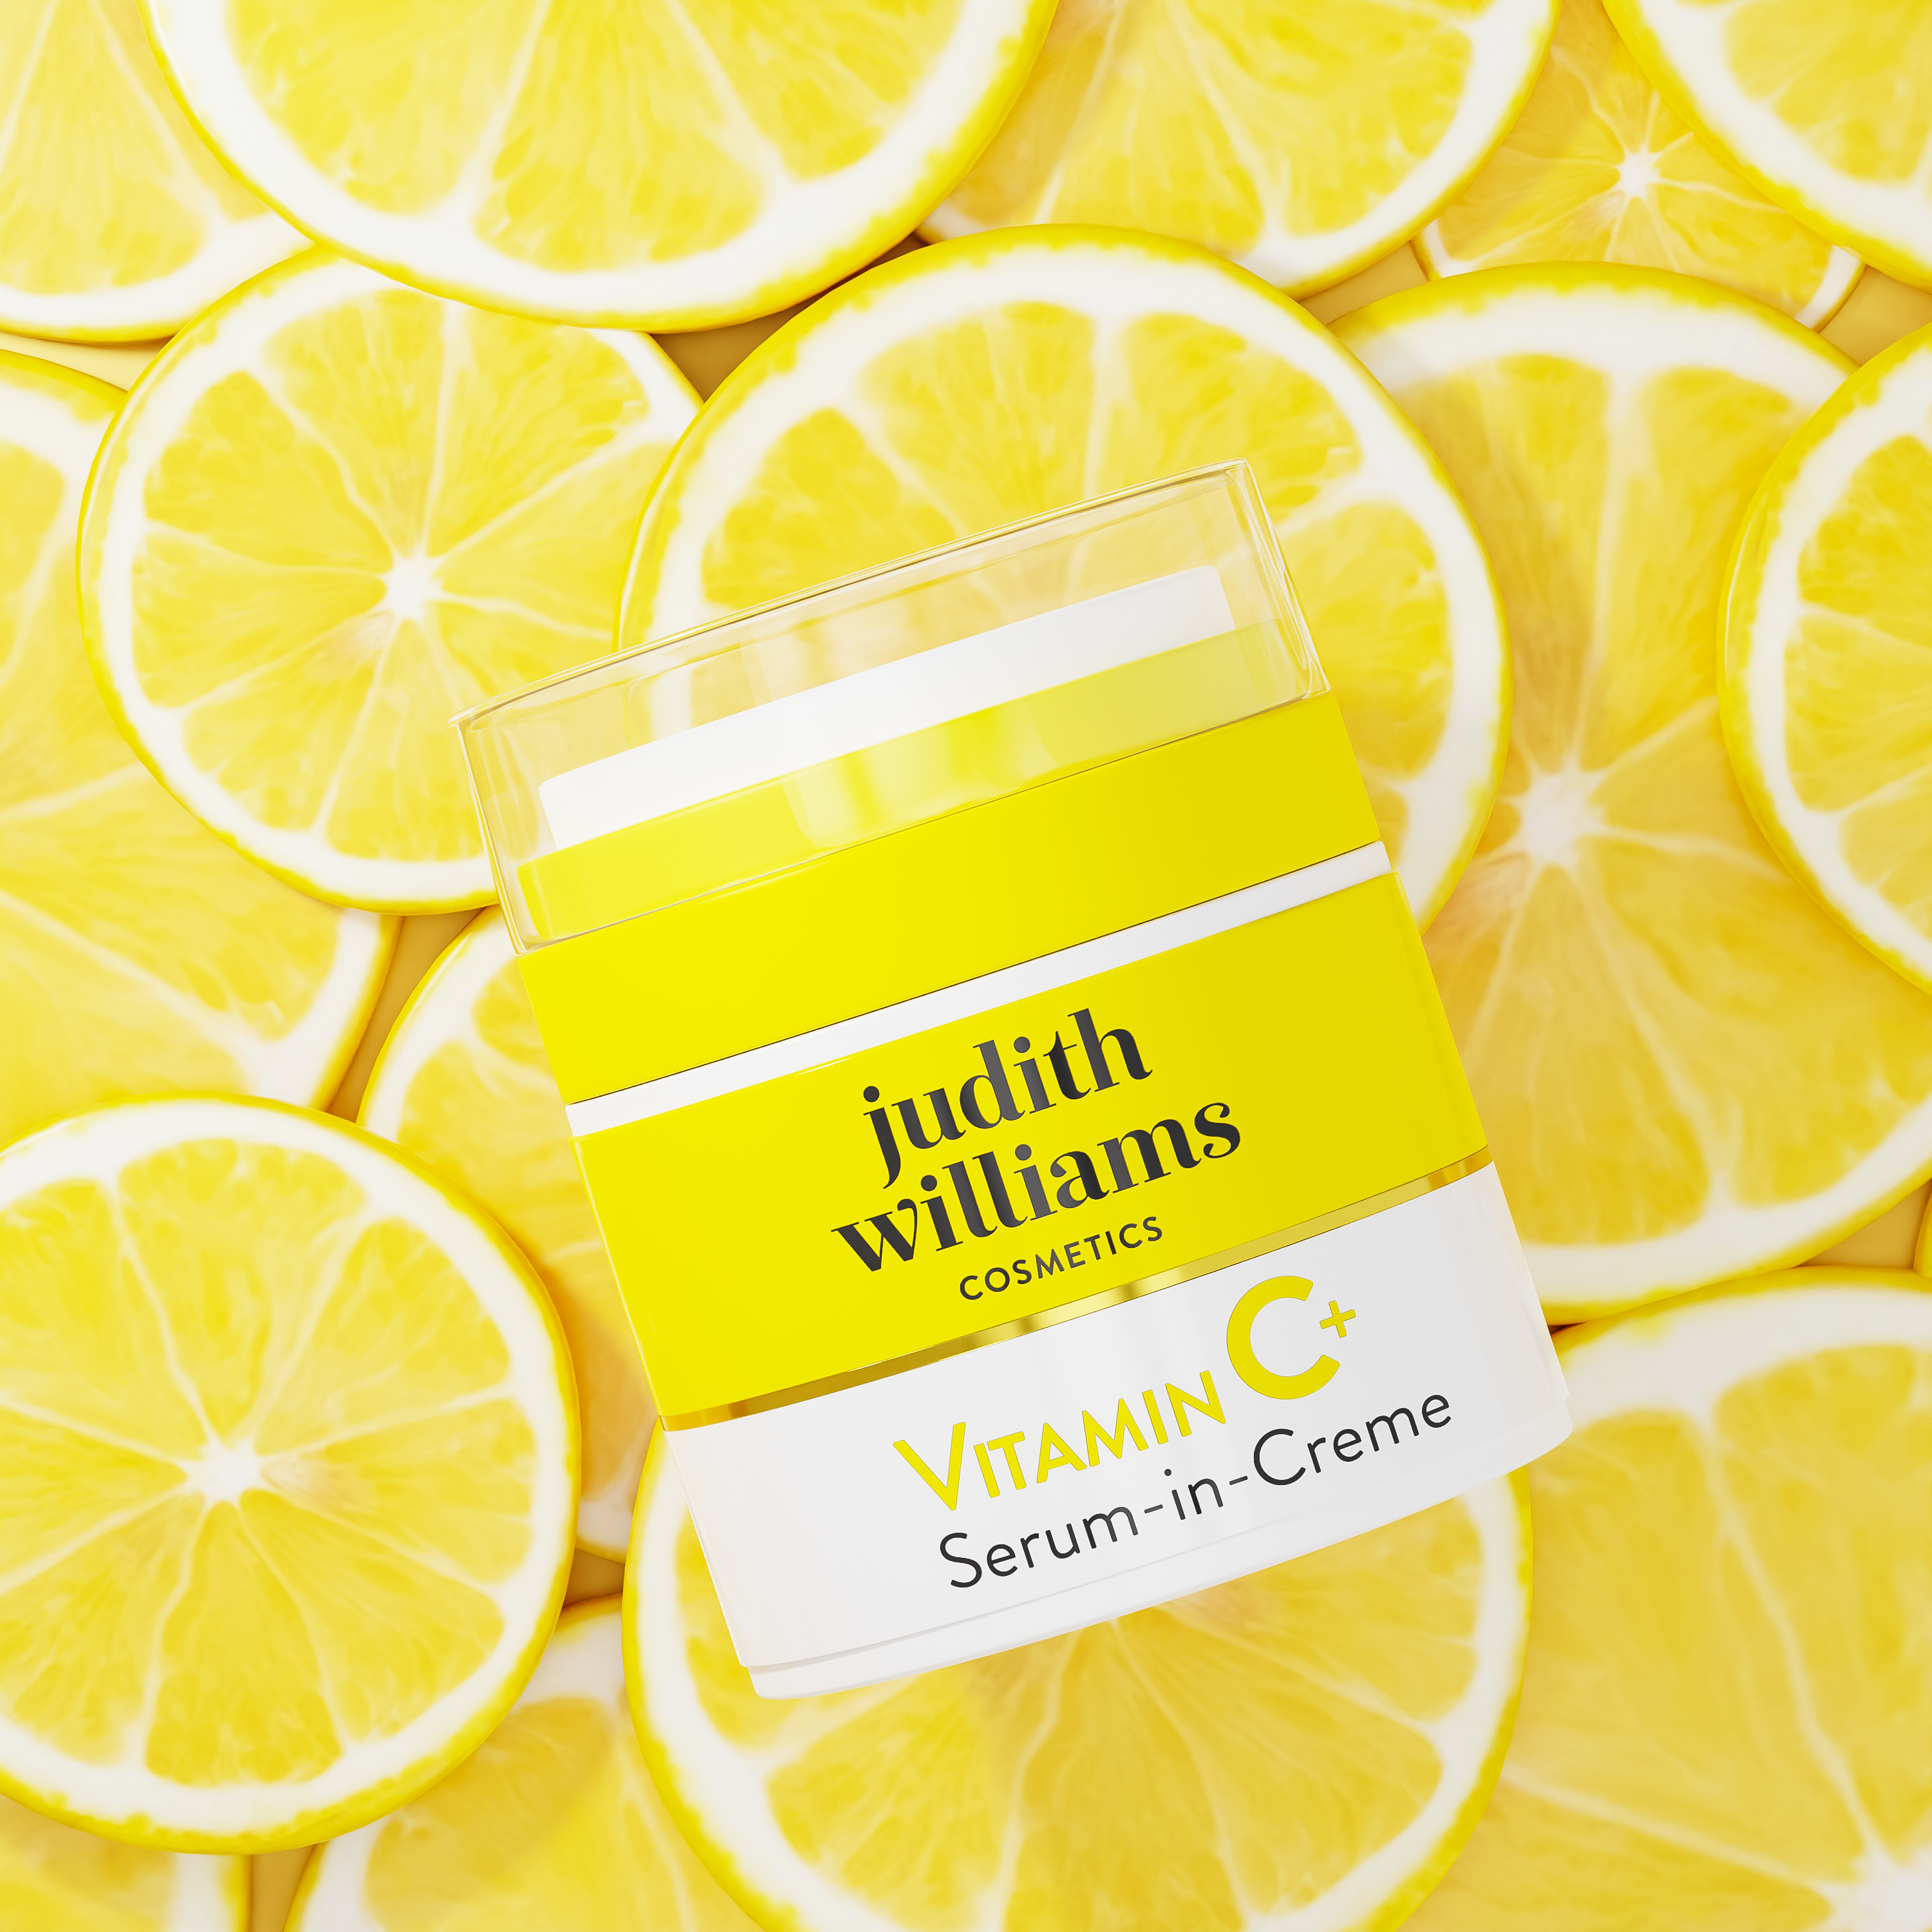 Gesichtscreme | Vitamin C+ | Serum-in-Creme | Judith Williams